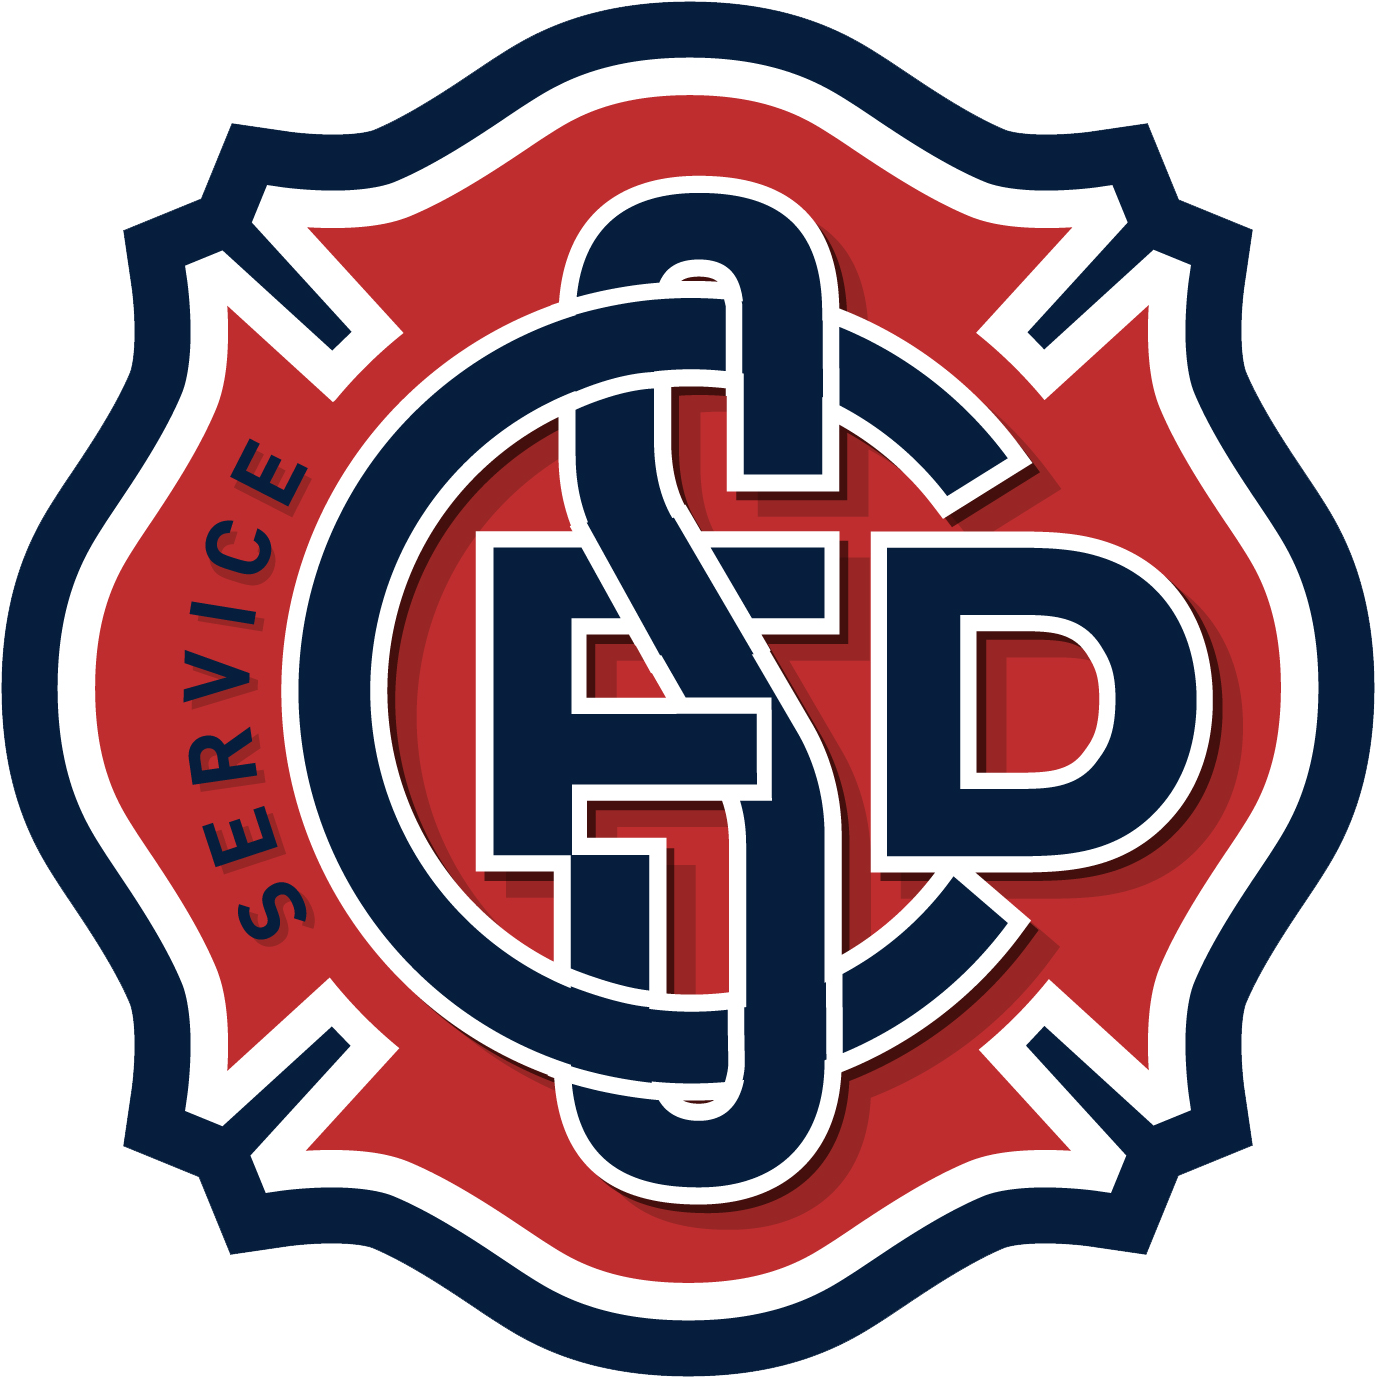 Silver Creek Fire Department - Fire Department (1390x1392)